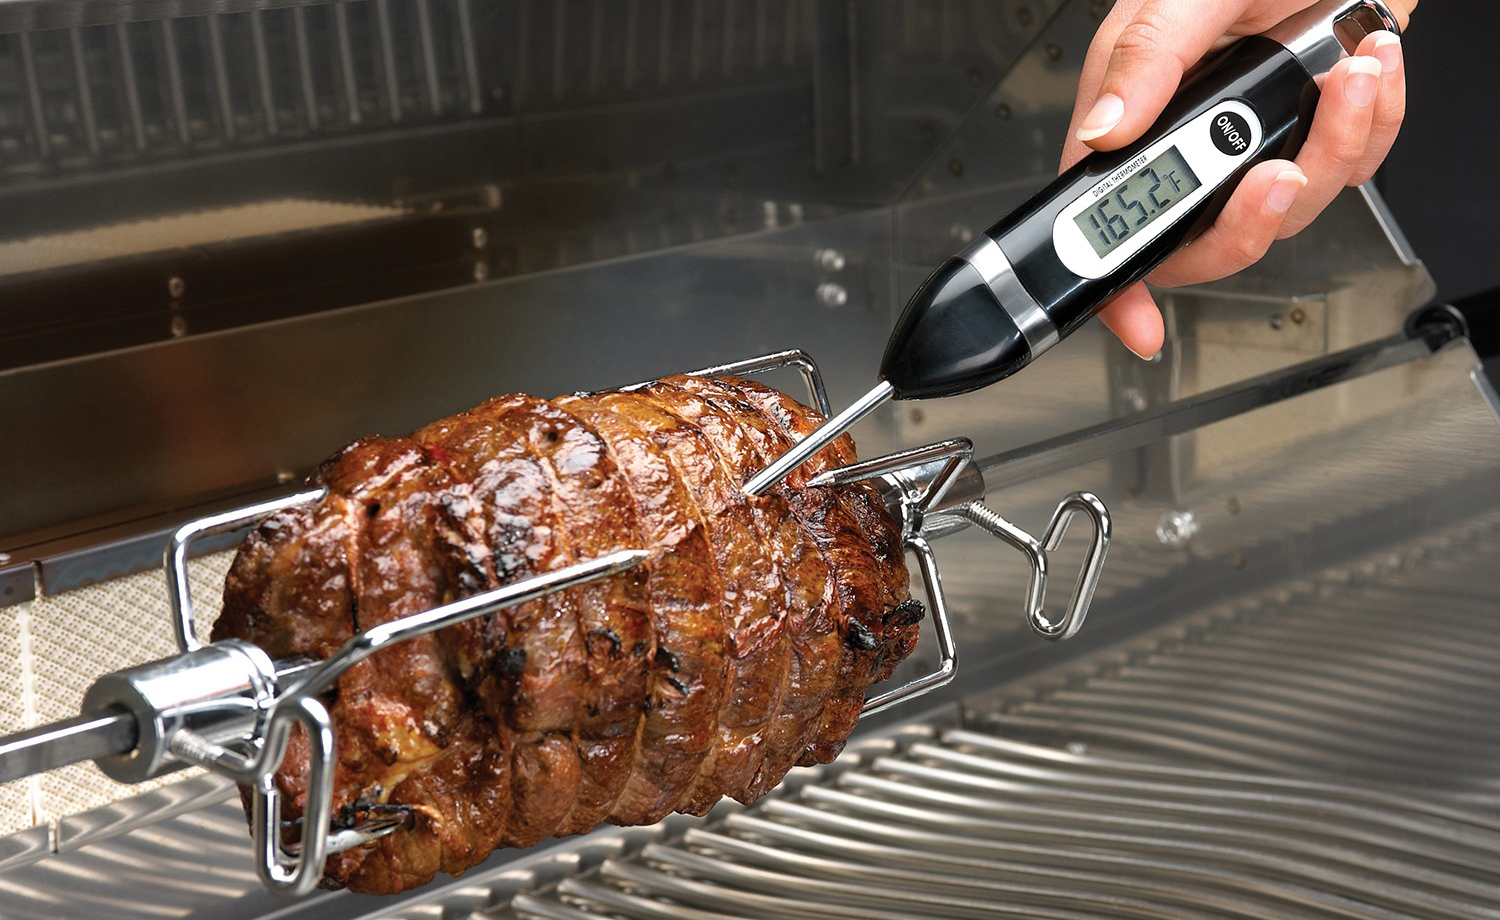 Kaufen Sie China Großhandels-Digitales Fleisch Thermometer Grillen